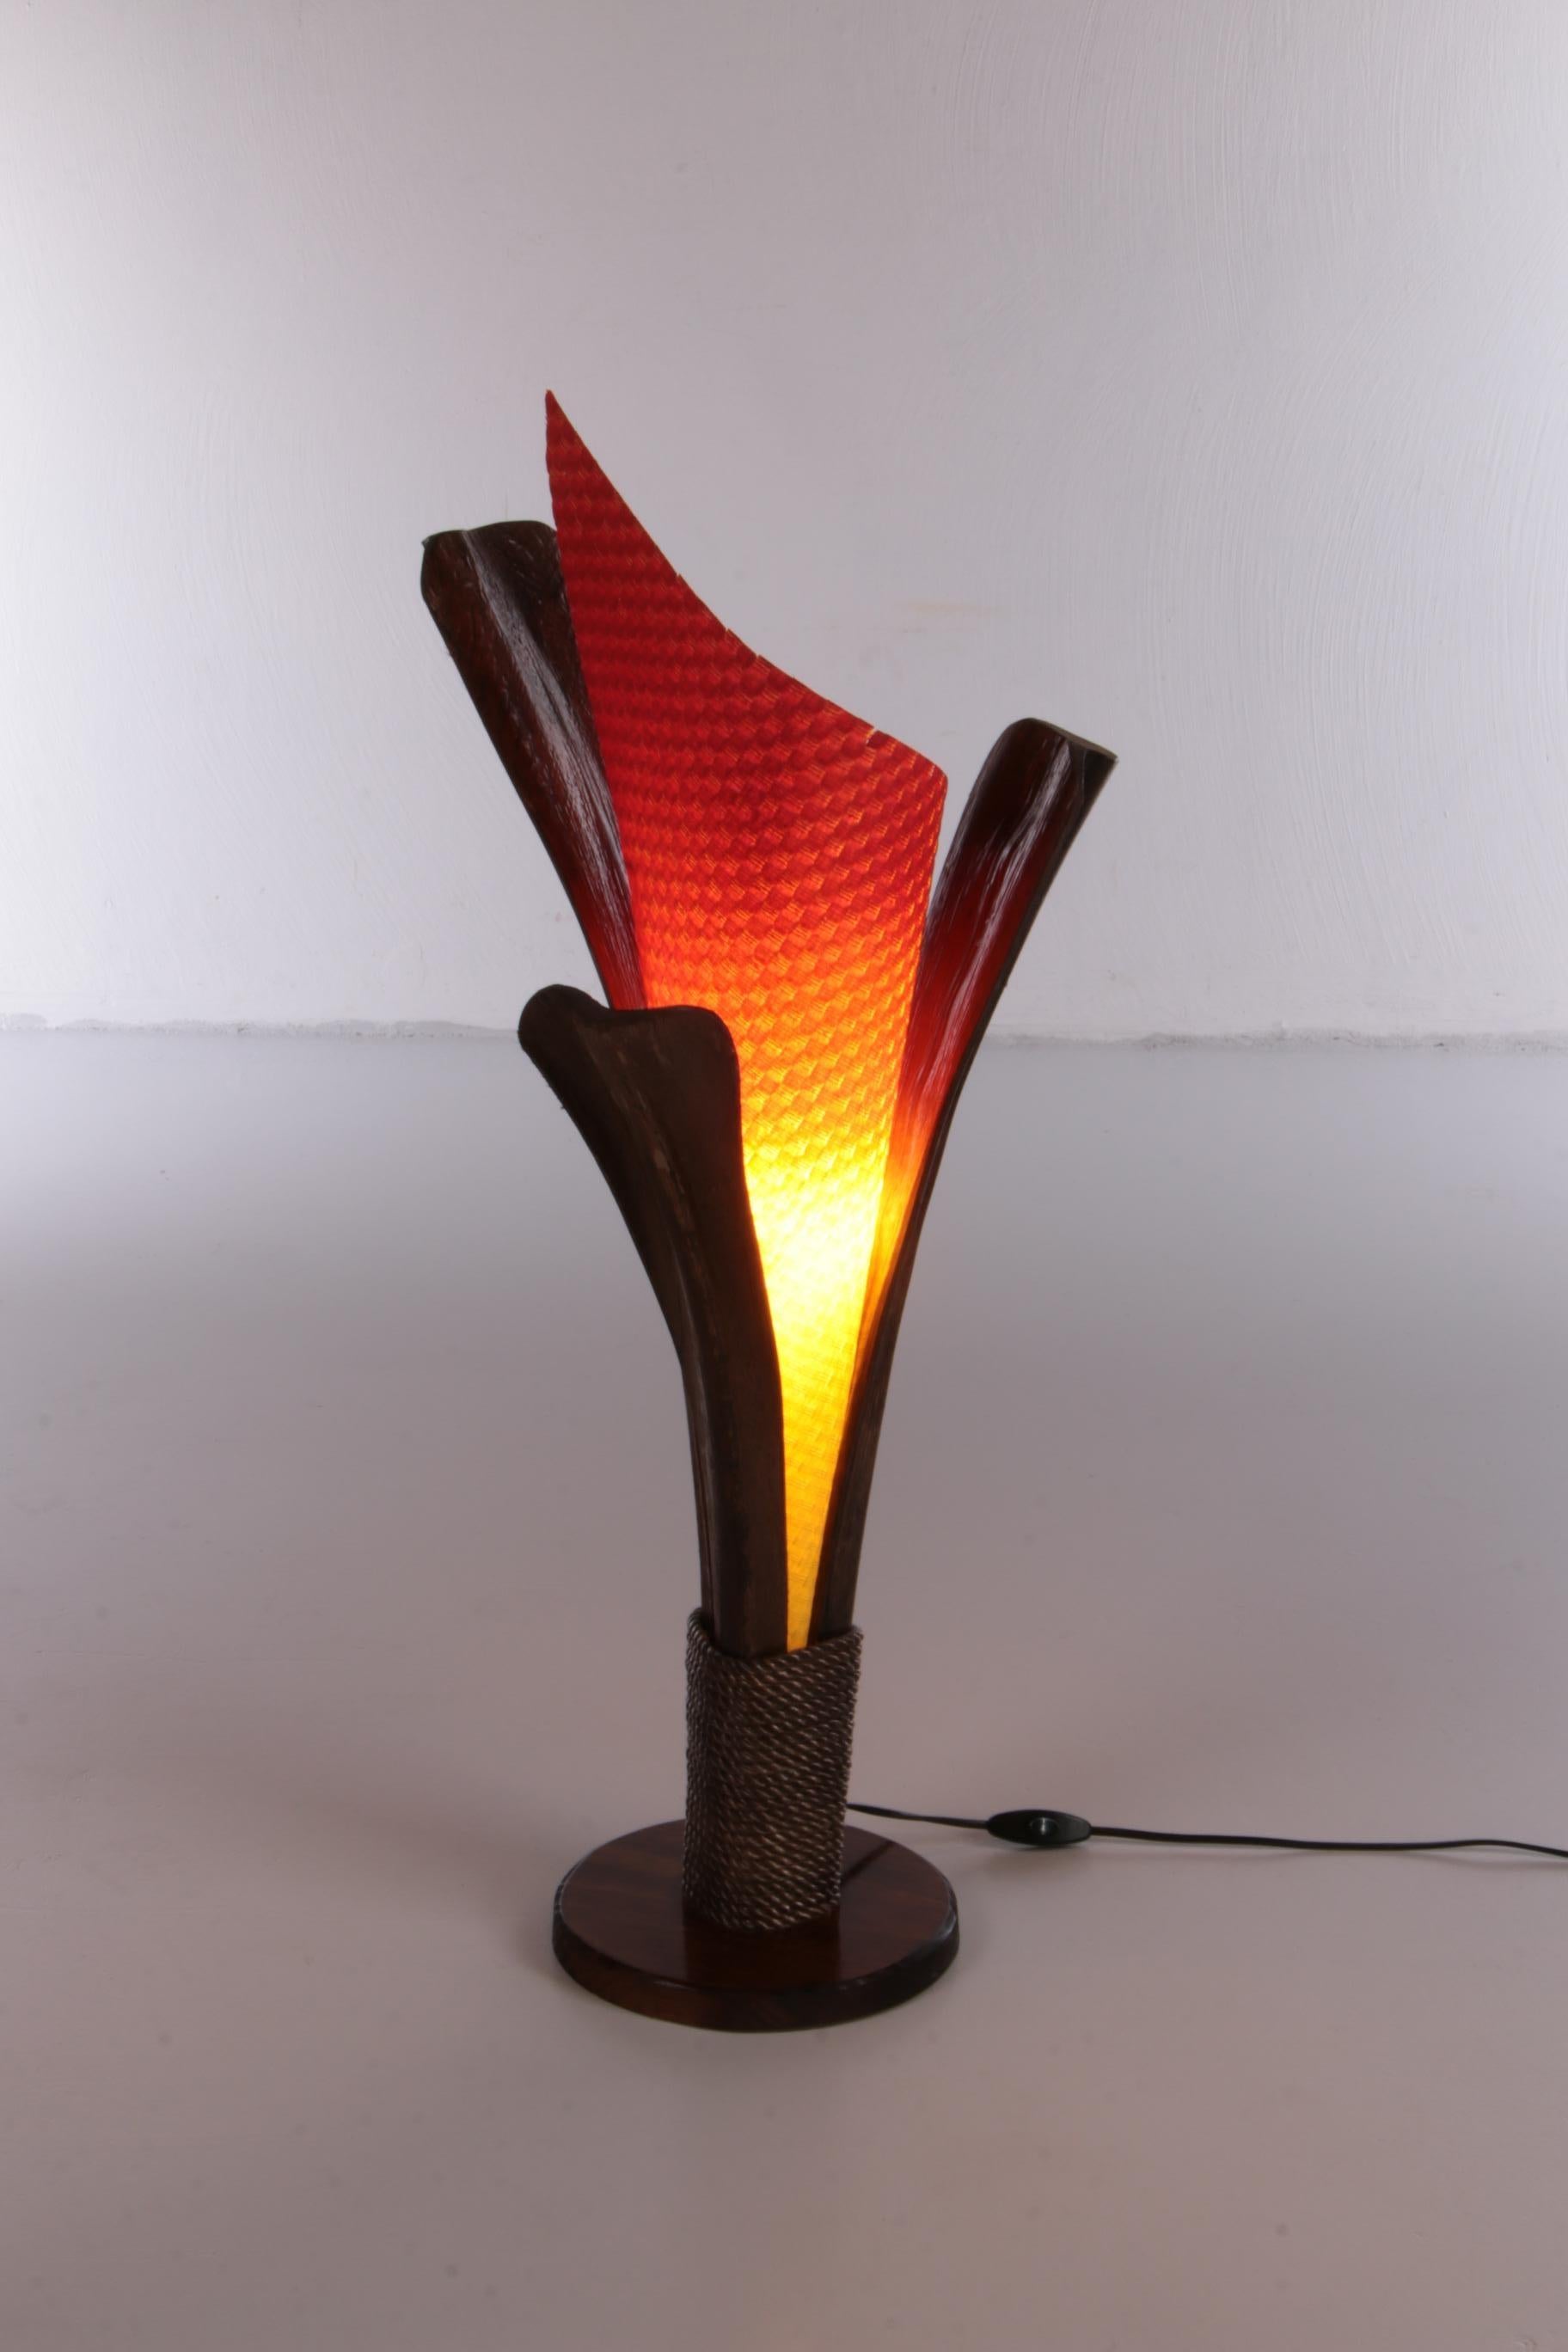 Belle lampe de table vintage fabriquée en France dans les années 1980.

Le support est fait d'écorce de palmier séchée, ce qui donne à la lampe un aspect naturel et brut.

L'abat-jour est fait de papier coloré, ce qui donne l'impression d'une